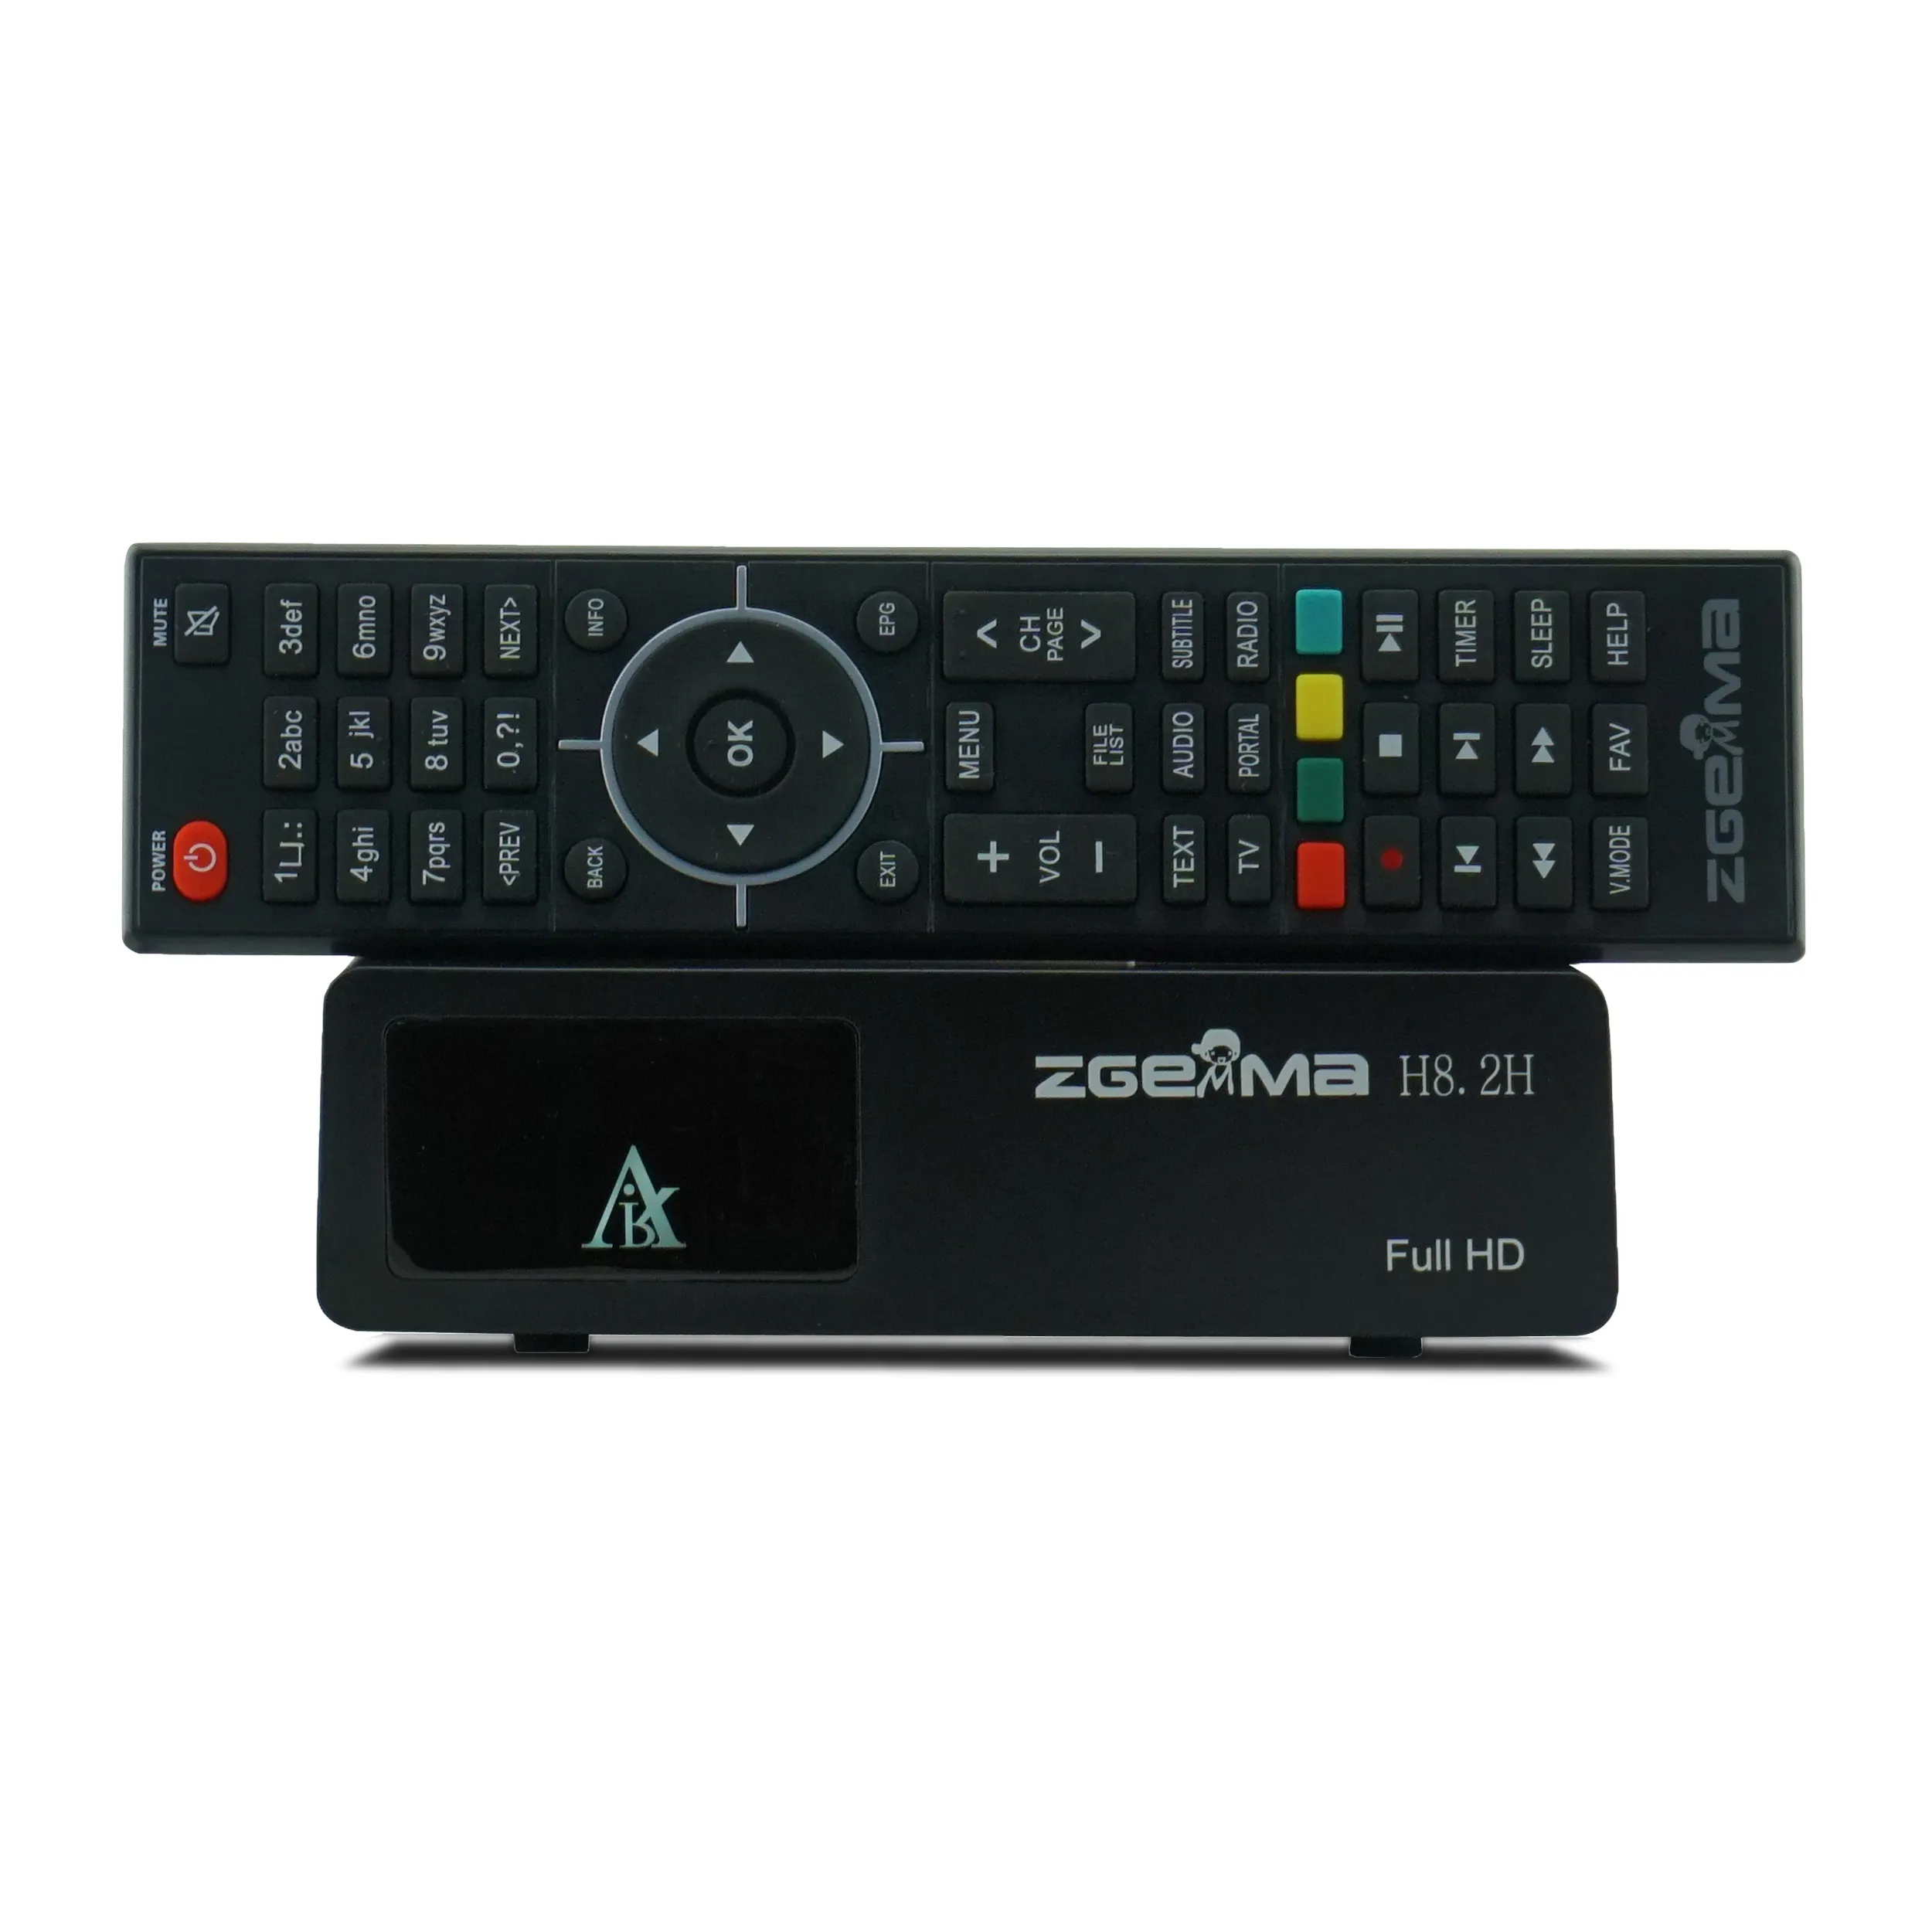 クアッドコアデジタルTVデコーダーZGEMMA H8.2H E2システムDVBS2X DVB-T2/Cコンボチューナーで効率的な衛星TV受信を実現